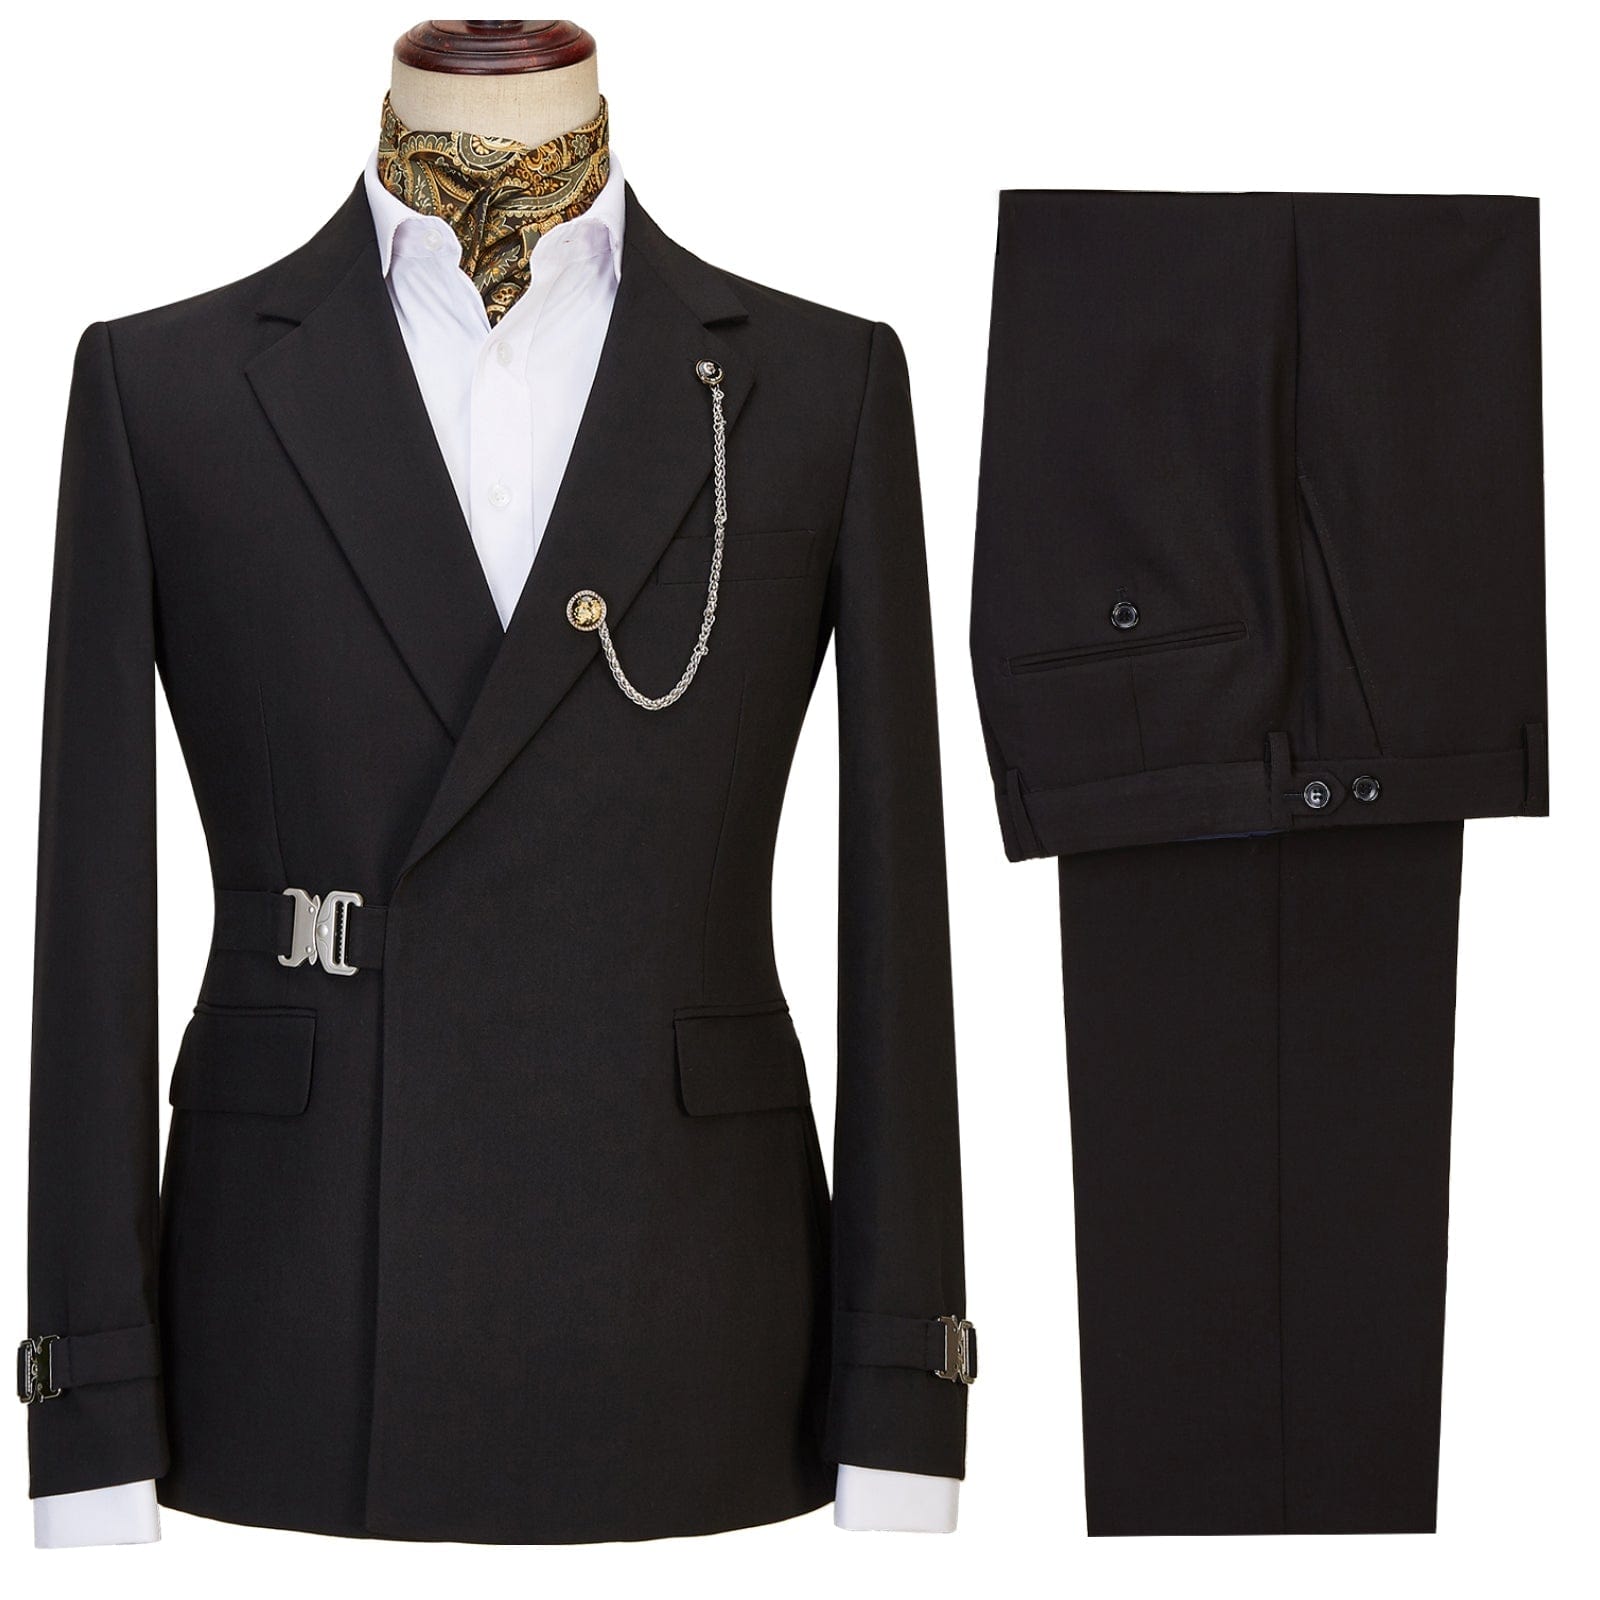 ceehuteey Men's 2 Piece Suit with Metal Clasp Slim Fit Suit Stylish Tuxedo Suit Set